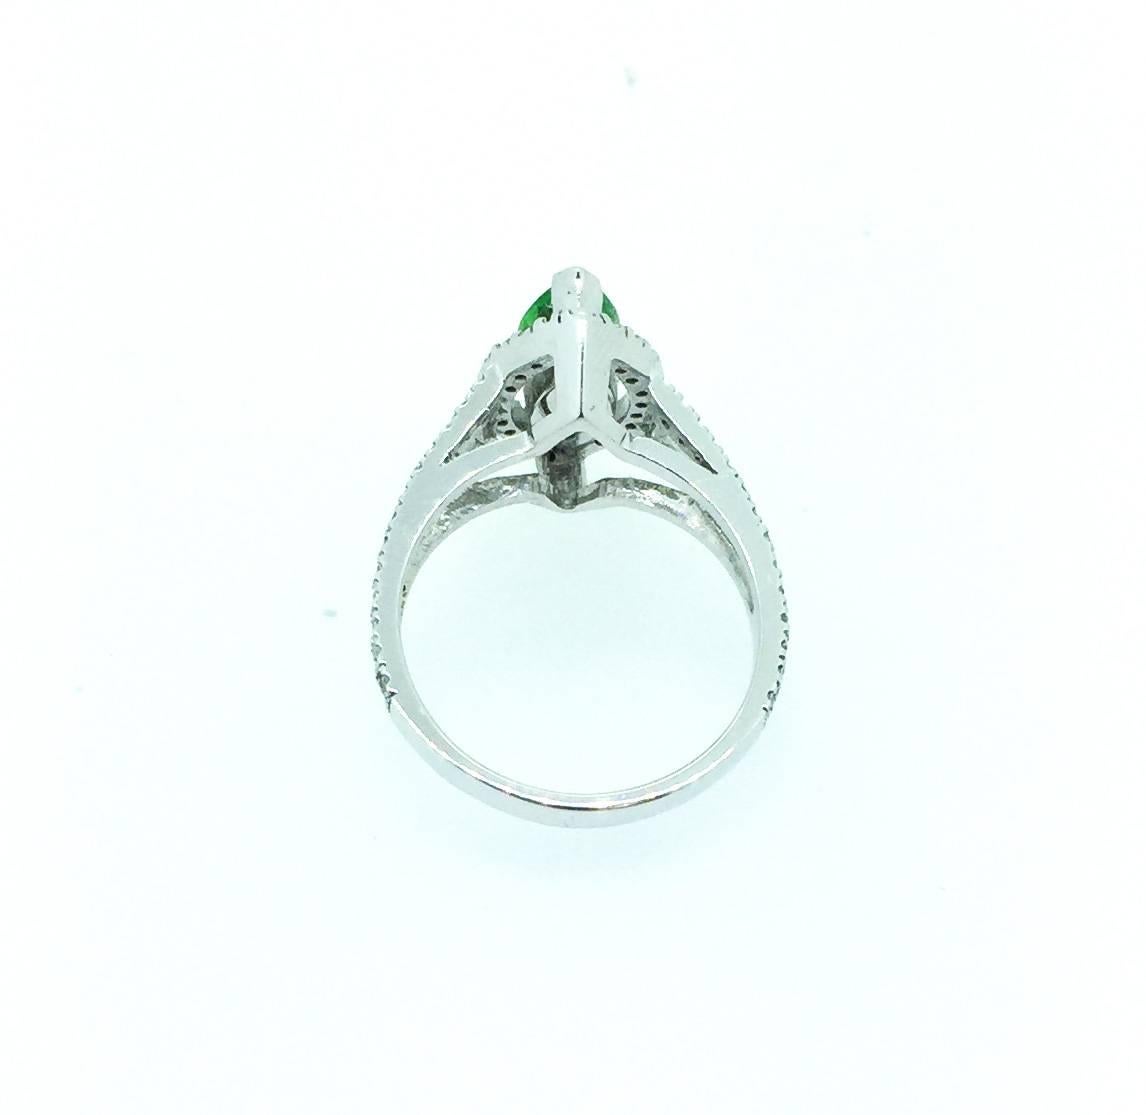 Modern 1.62 Carat Marquise Cut Tsavorite Diamond 14 Karat White Gold Engagement Ring